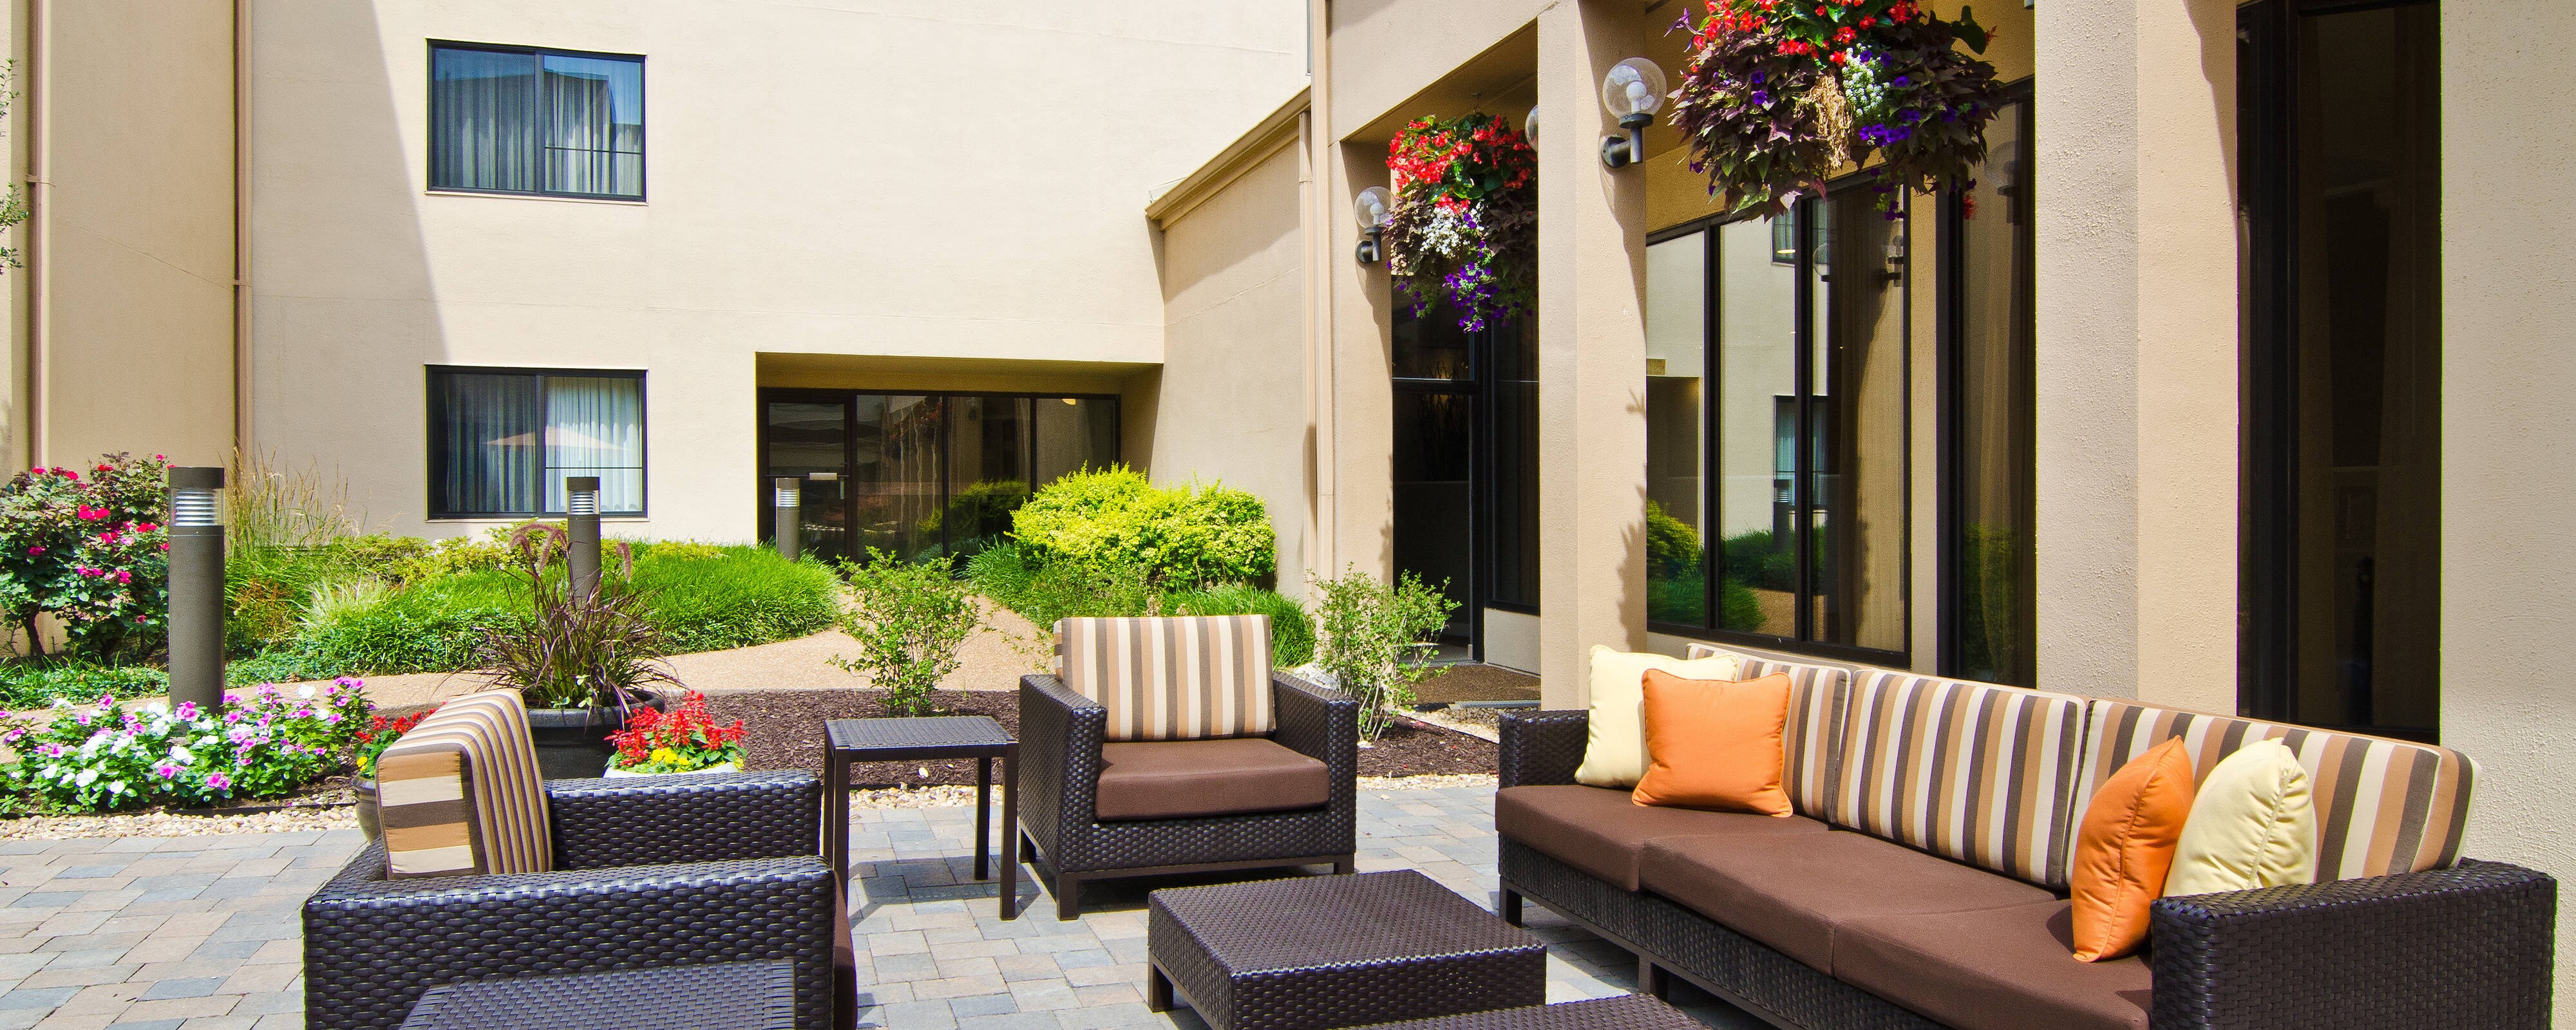 Hotels in Westport Plaza, St. Louis | Courtyard St. Louis Westport Plaza